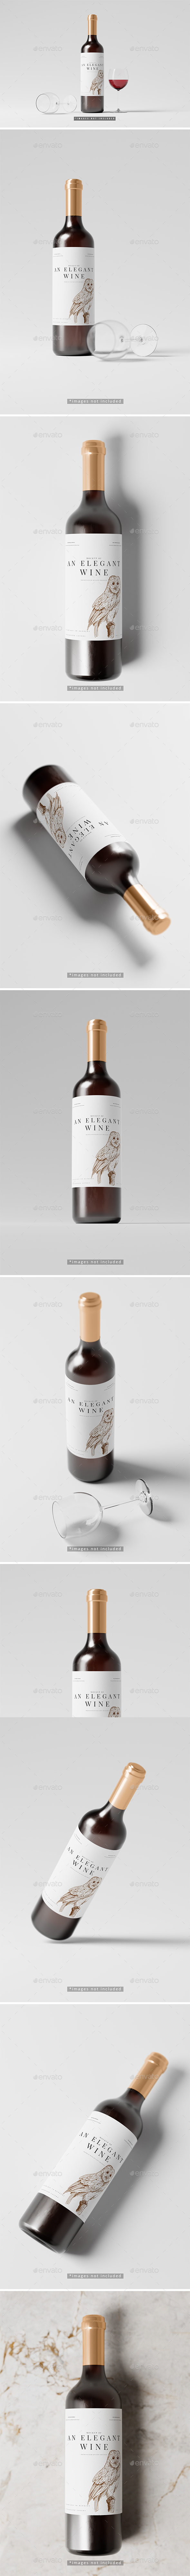 [DOWNLOAD]Elegant Red Wine Bottle Mockup Collection